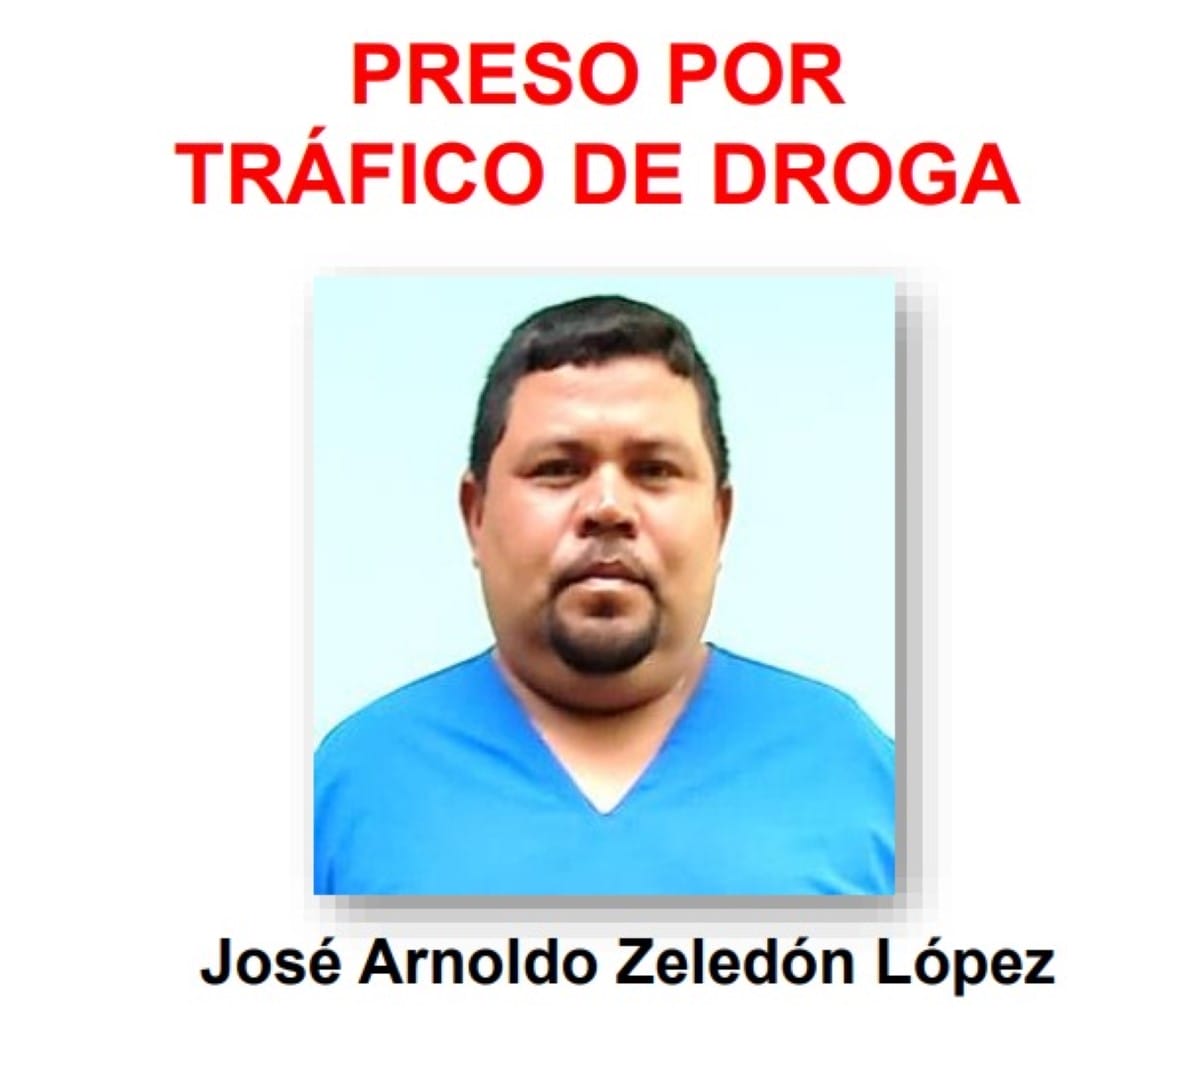 José Arnoldo Zeledón López, de 41 años